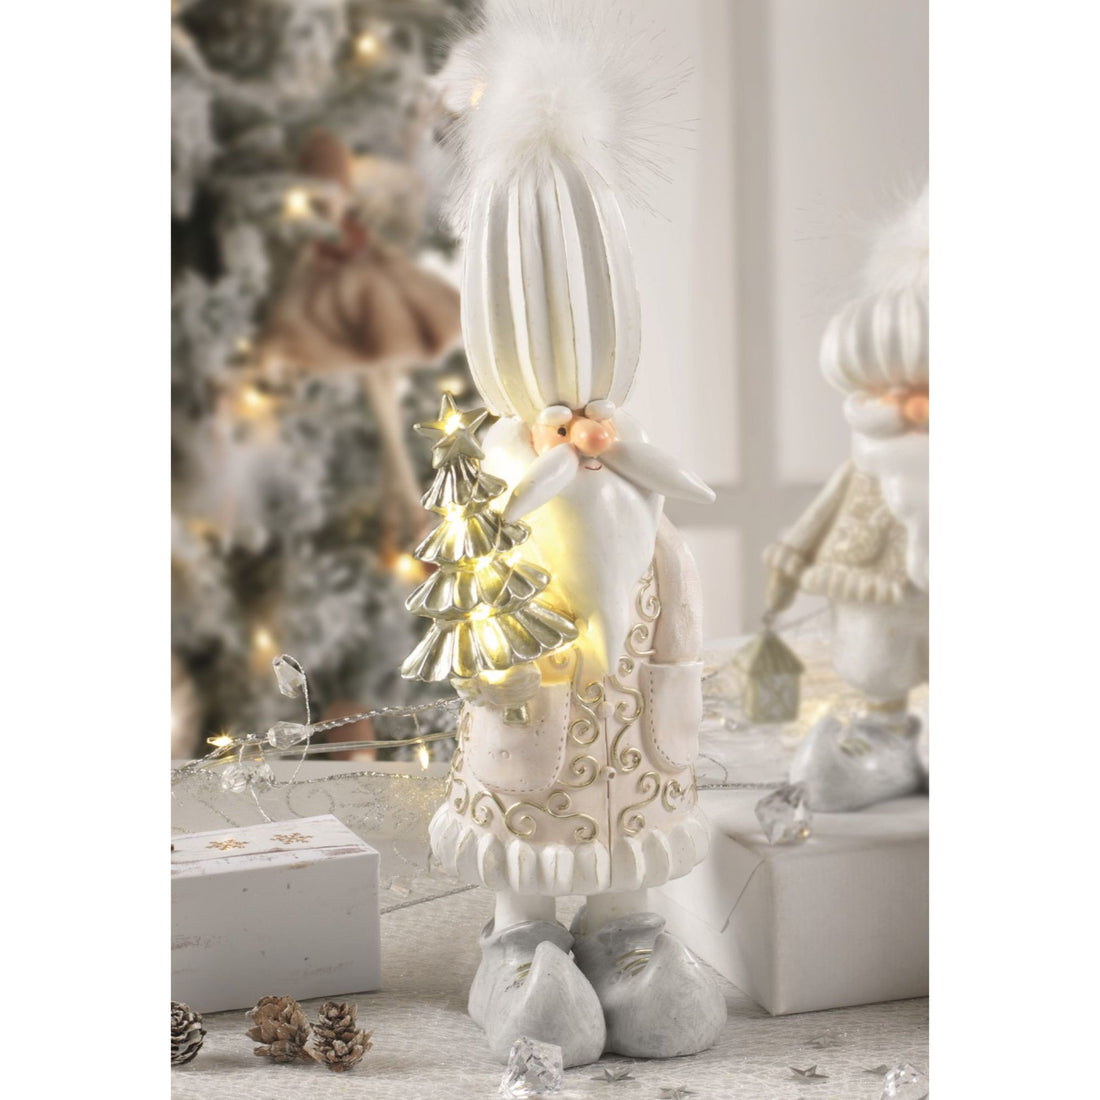 MASCAGNI CASA - Babbo Natale LED Bianco c/ Piume Decorazione Natalizia 31 cm Resina